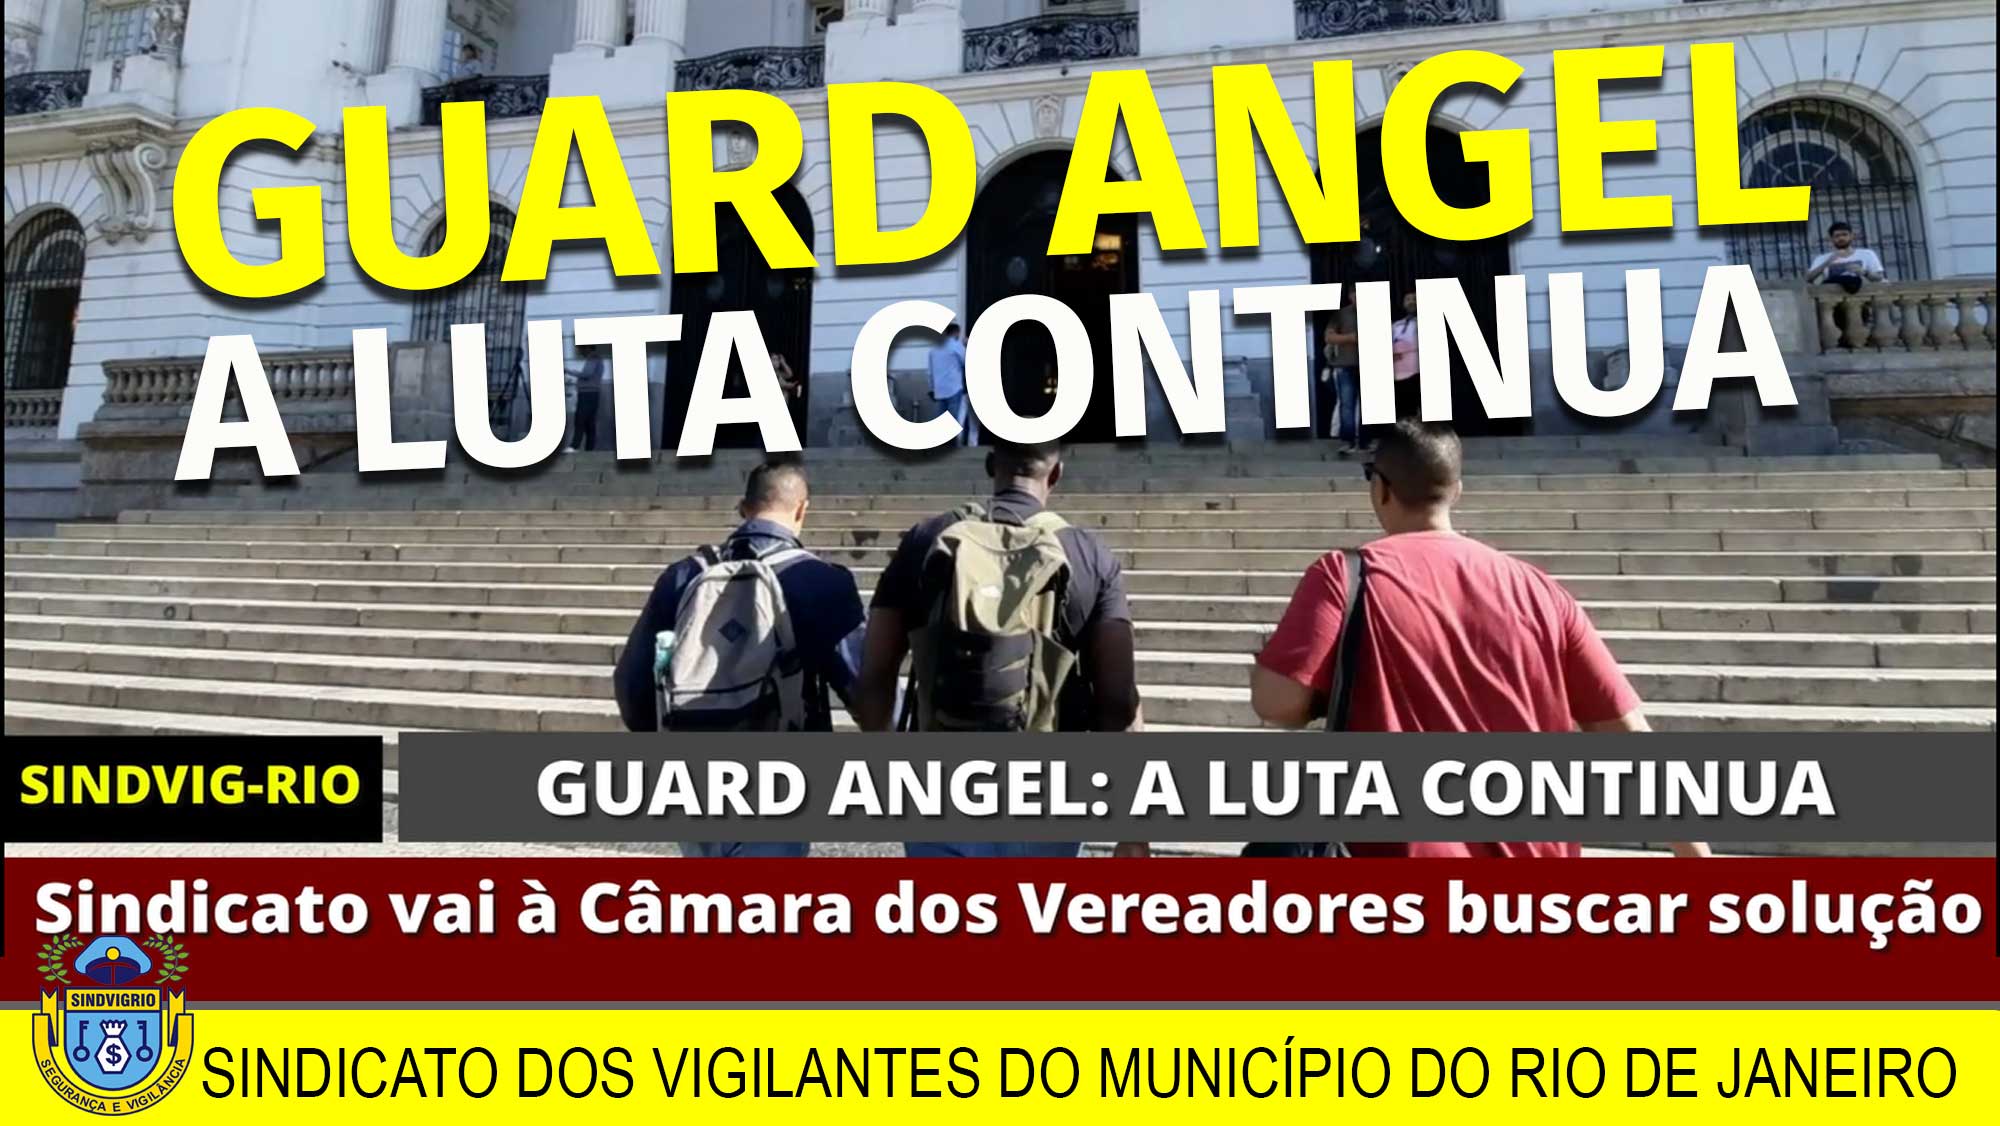 Sindicato dos vigilantes de Minas Gerais - Aproveite os dias quentes e  venha para o Clube dos Vigilantes